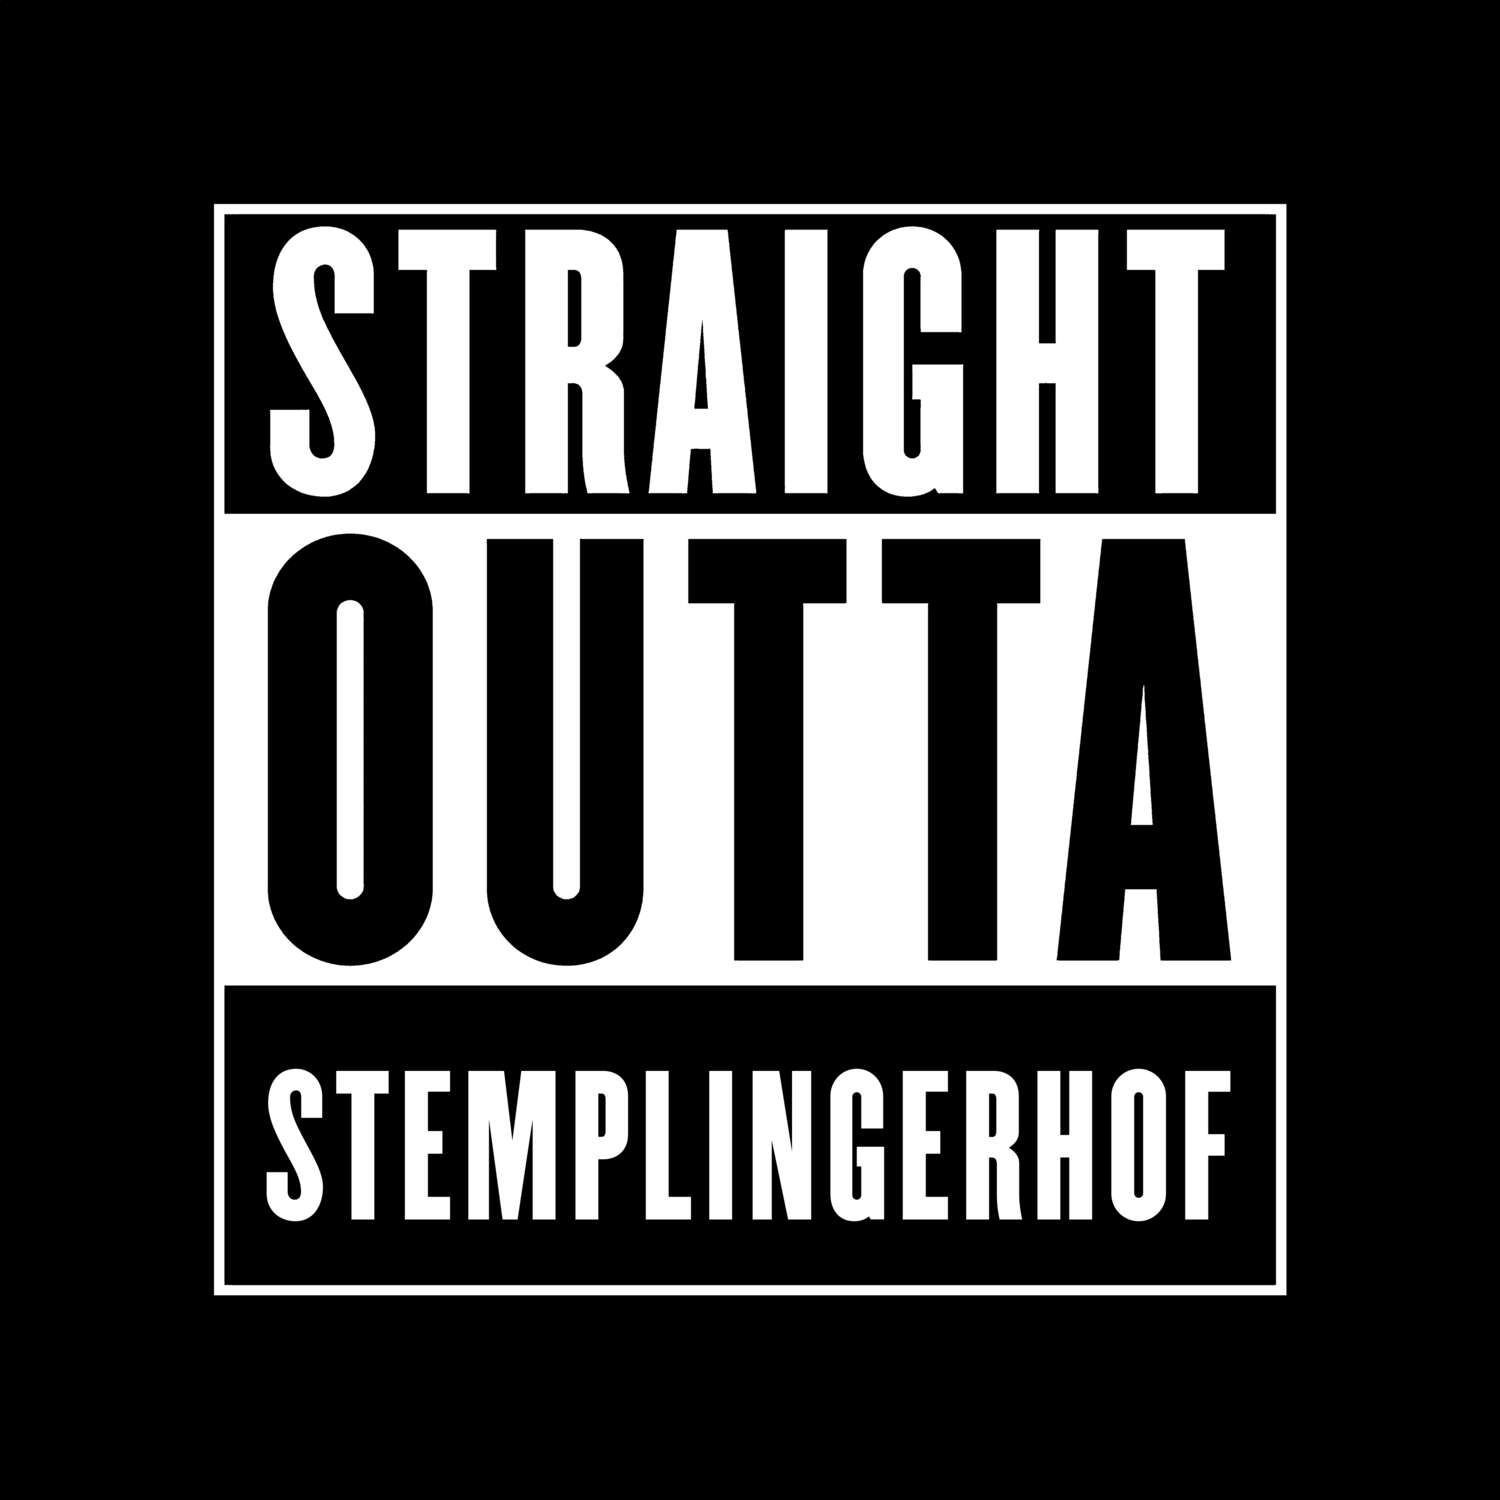 Stemplingerhof T-Shirt »Straight Outta«